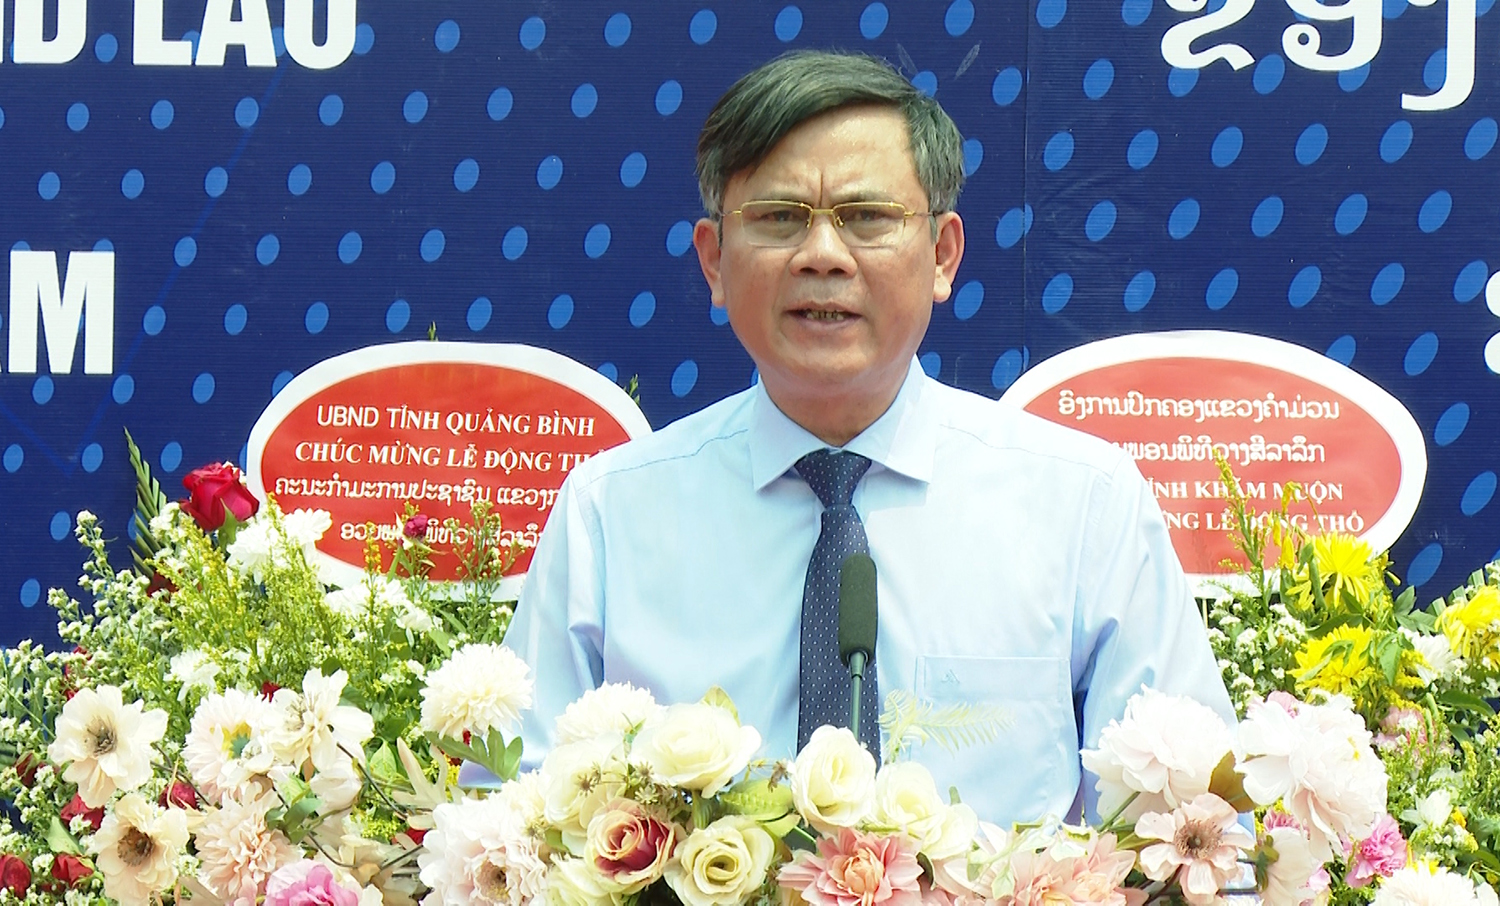 Đồng chí Trần Thắng, Chủ tịch UBND tỉnh Quảng Bình phát biểu tại lễ động thổ xây dựng Trường THCS Thống Nhất ở tỉnh Khăm Muồn